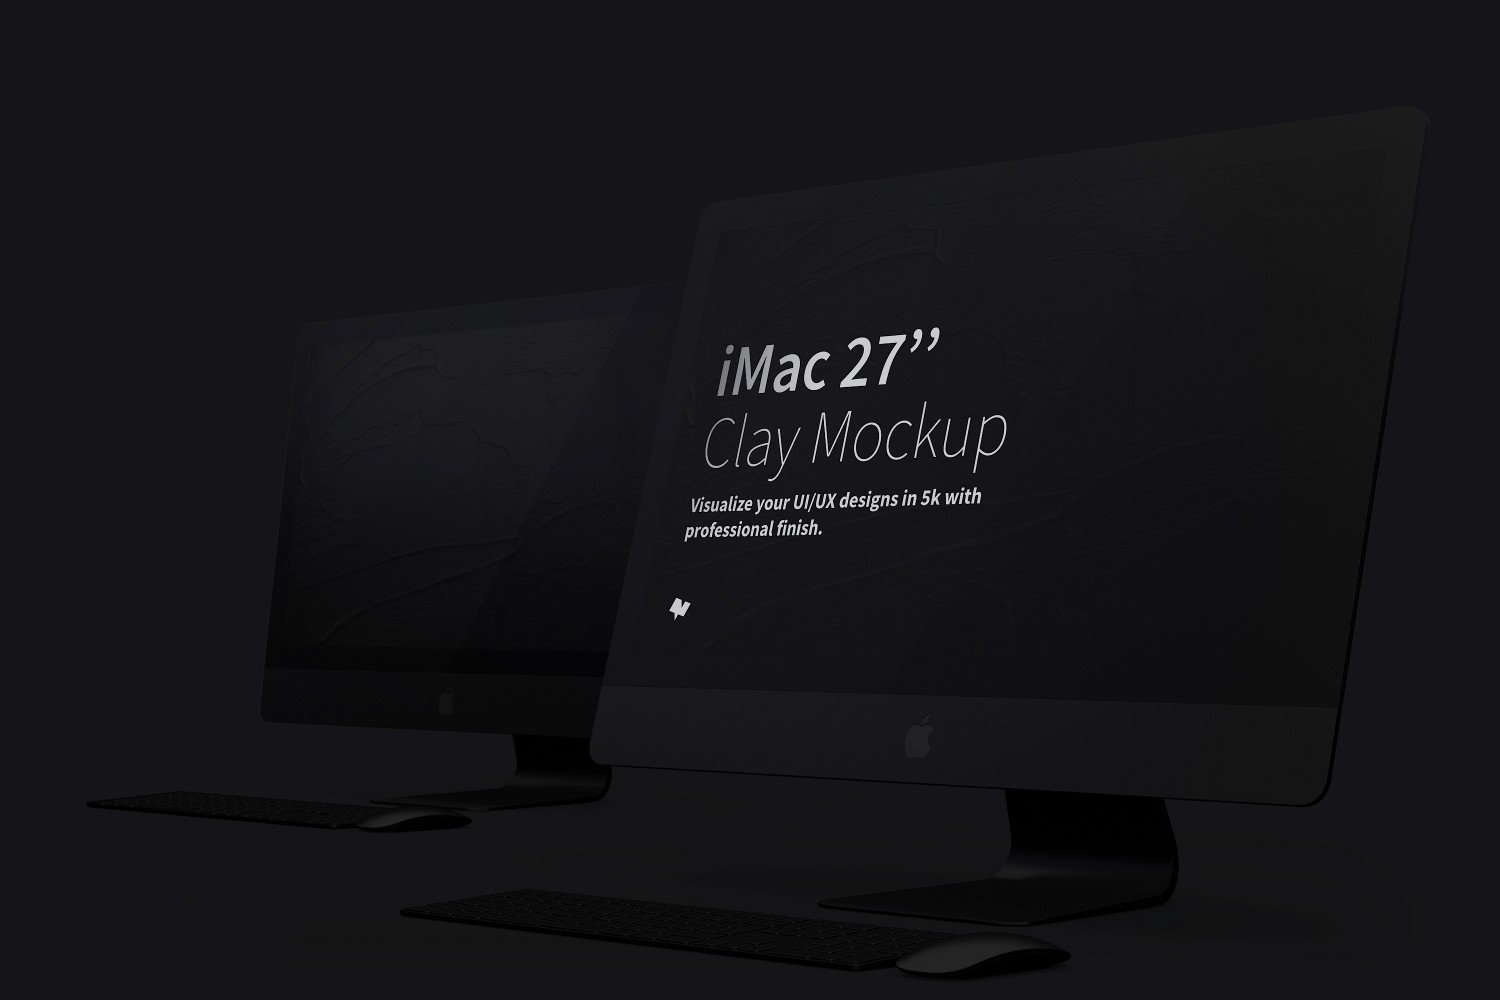 一体机电脑屏幕样机模板v03 Clay iMac 27” Mockup 03设计素材模板